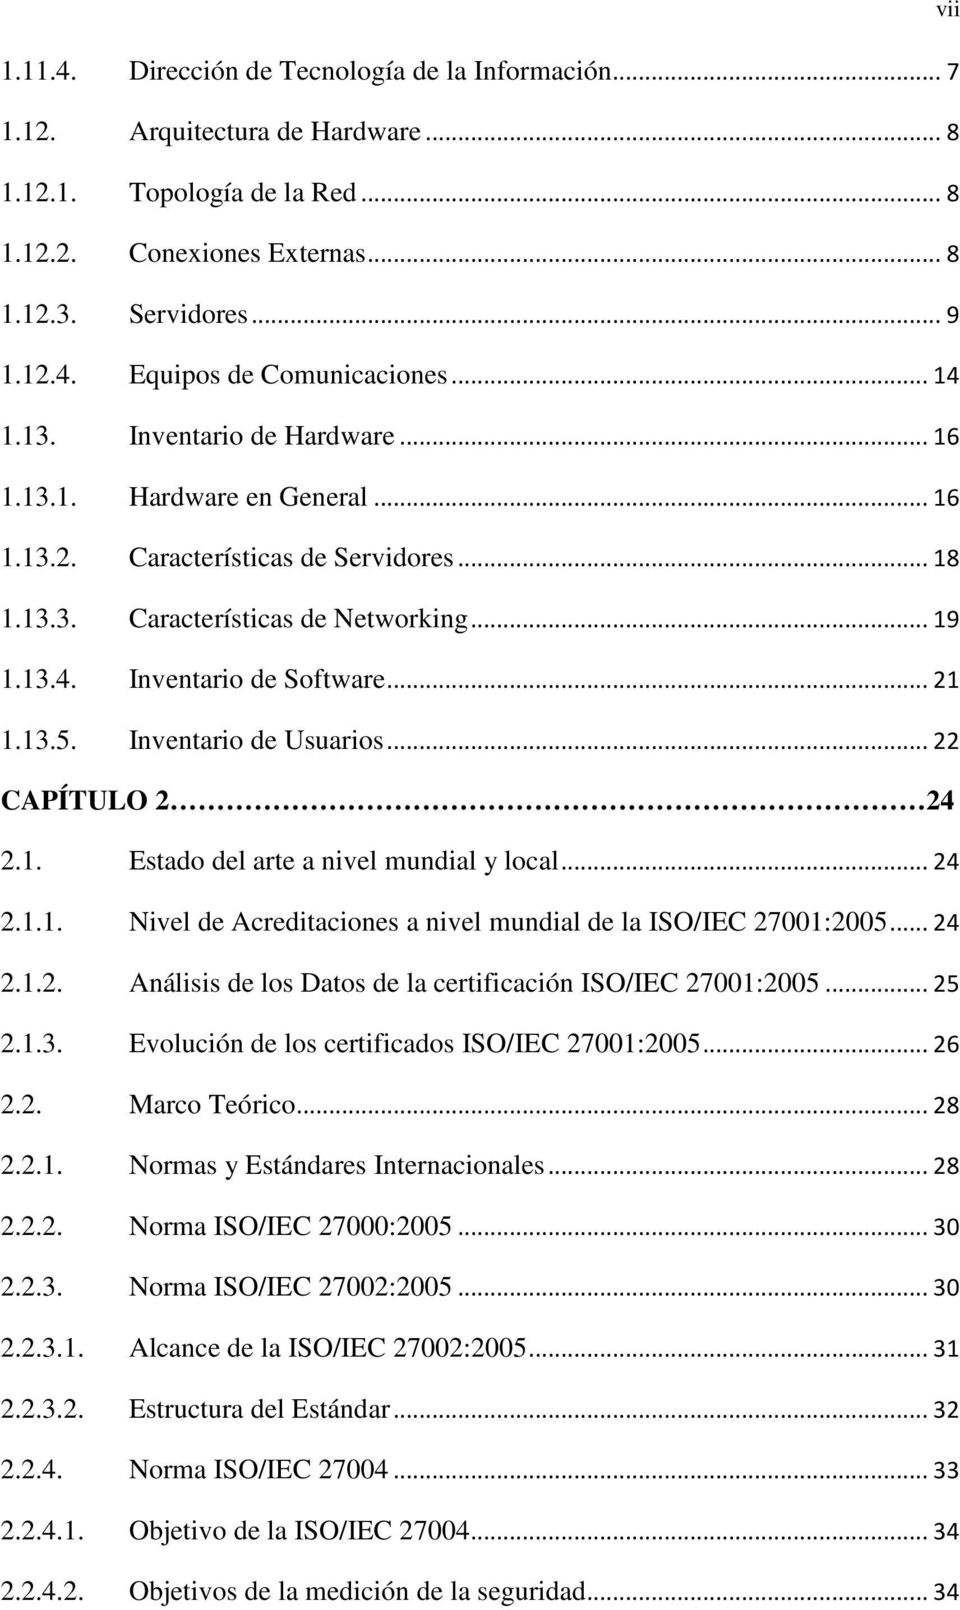 13.5. Inventario de Usuarios... 22 CAPÍTULO 2 24 2.1. Estado del arte a nivel mundial y local... 24 2.1.1. Nivel de Acreditaciones a nivel mundial de la ISO/IEC 27001:2005... 24 2.1.2. Análisis de los Datos de la certificación ISO/IEC 27001:2005.